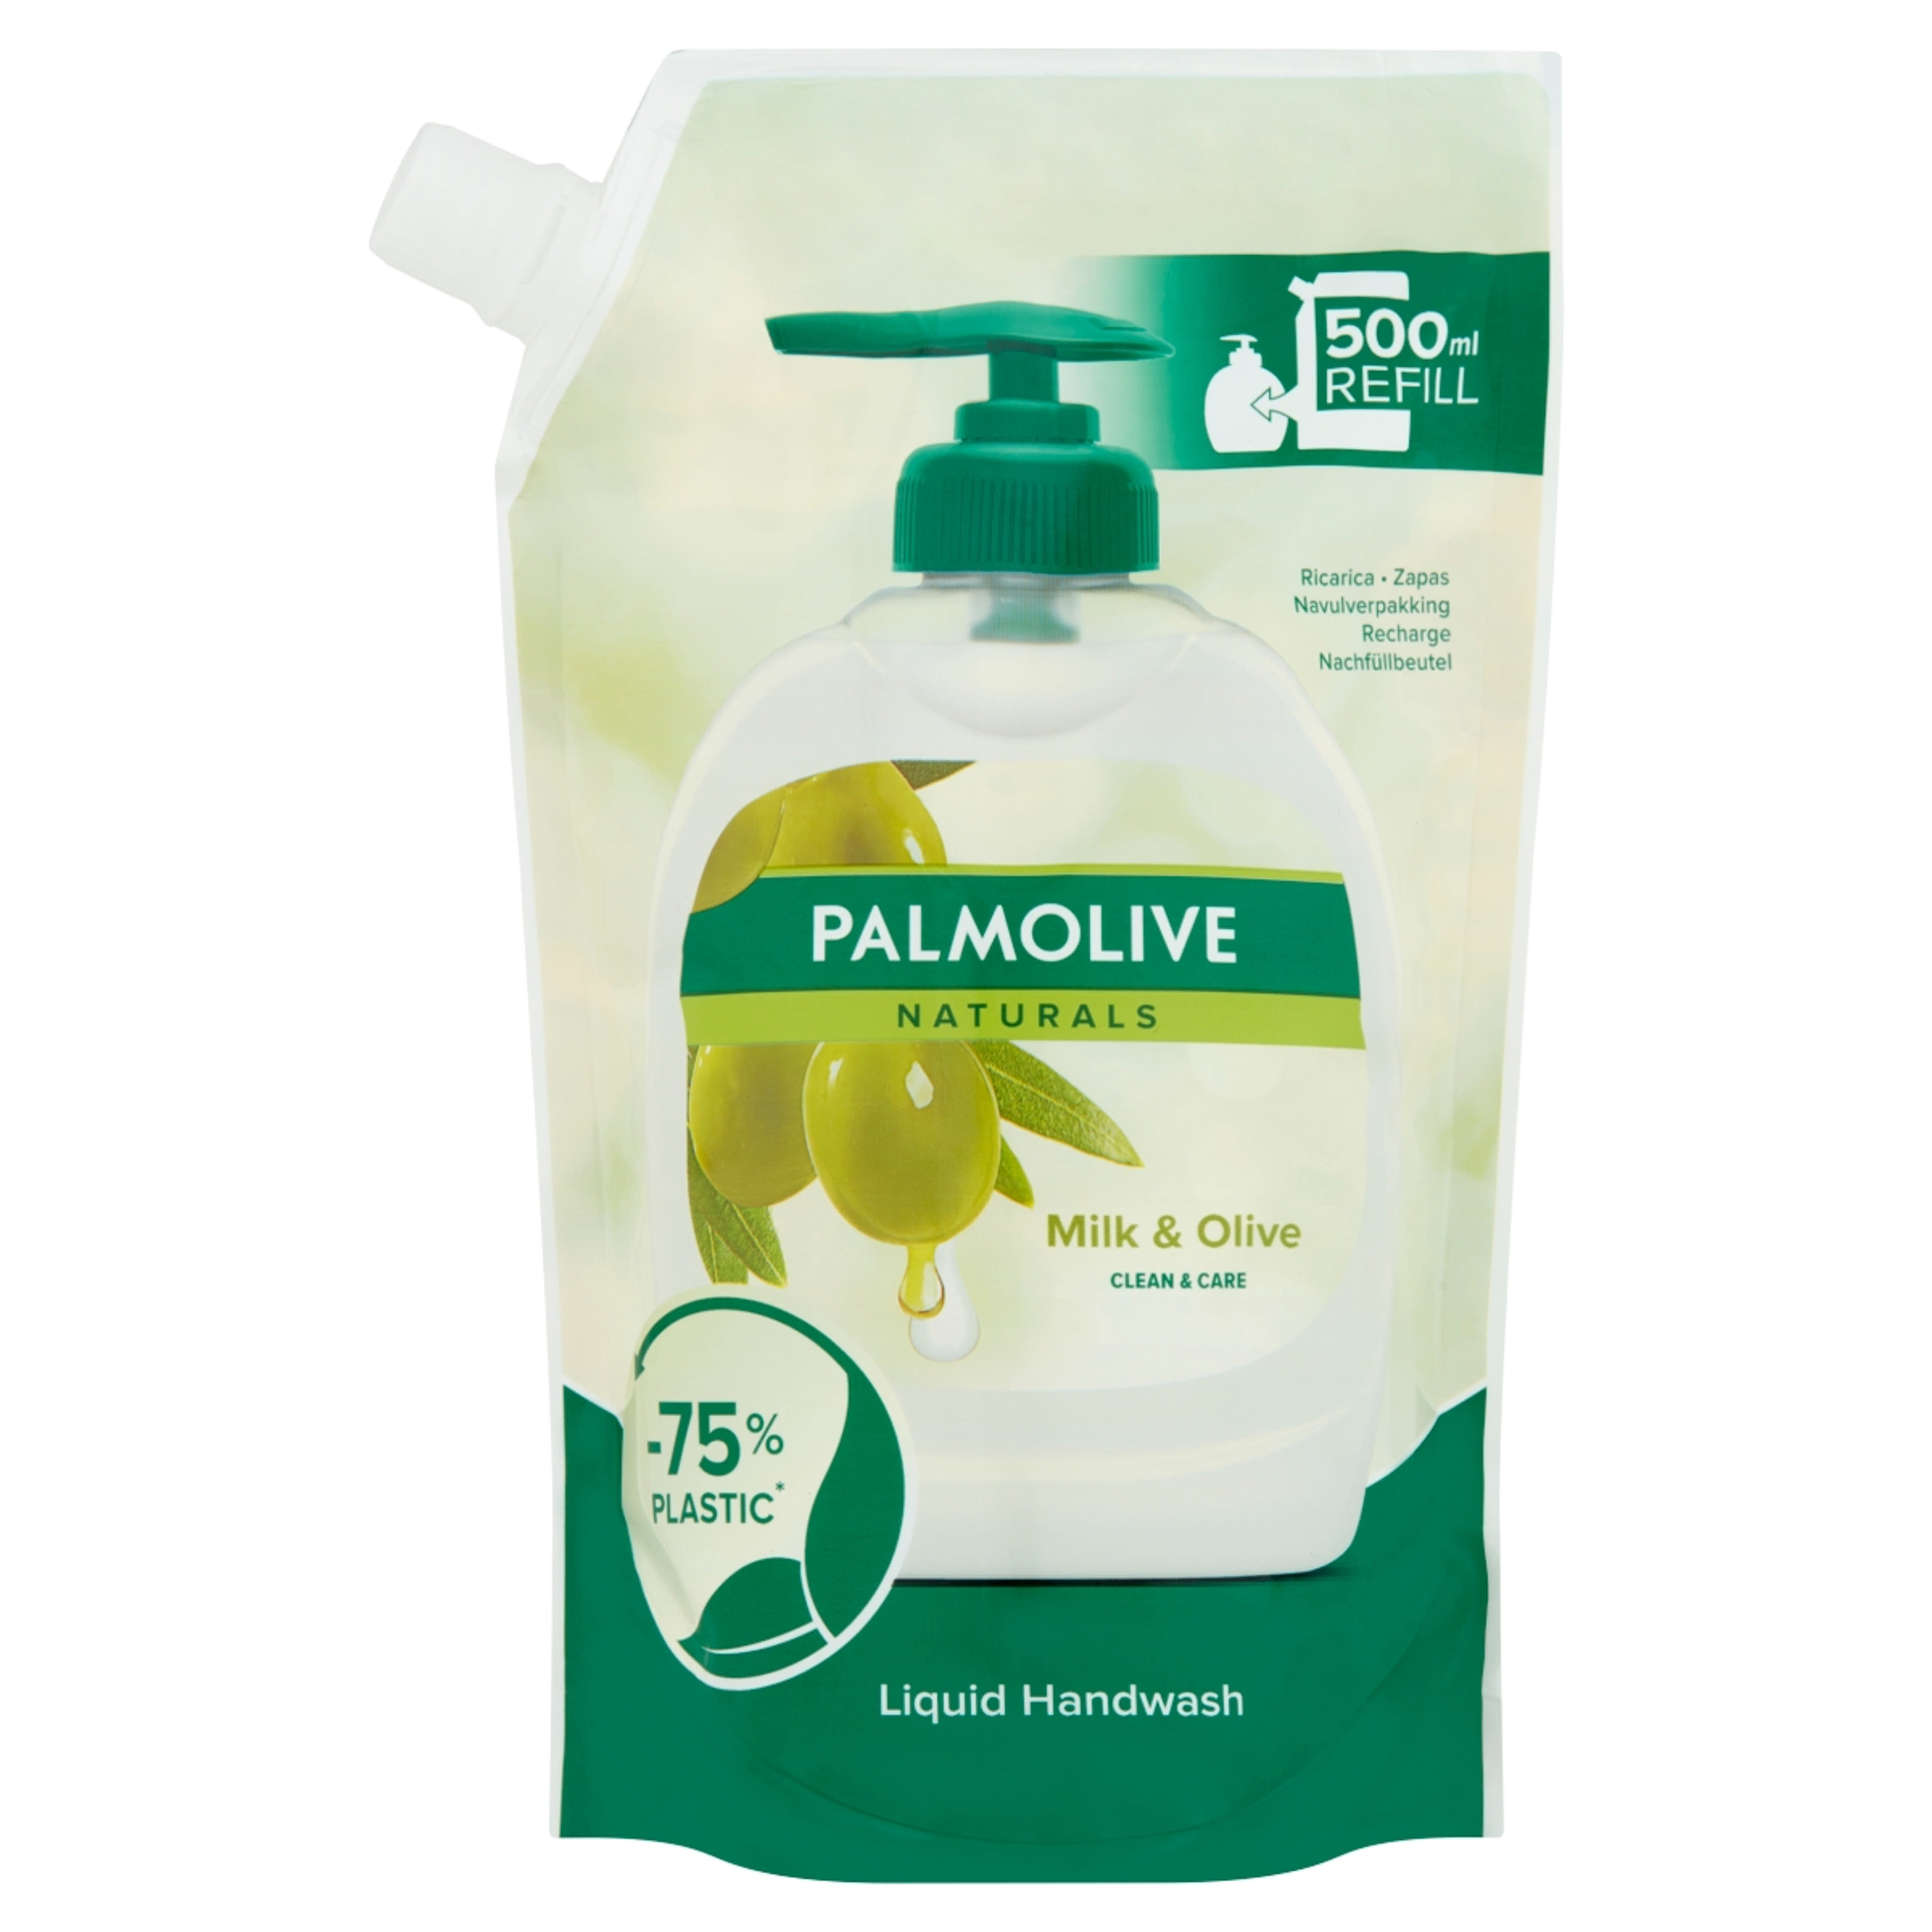 Palmolive Naturals Milk & Olive folyékony szappan utántöltő - 500 ml